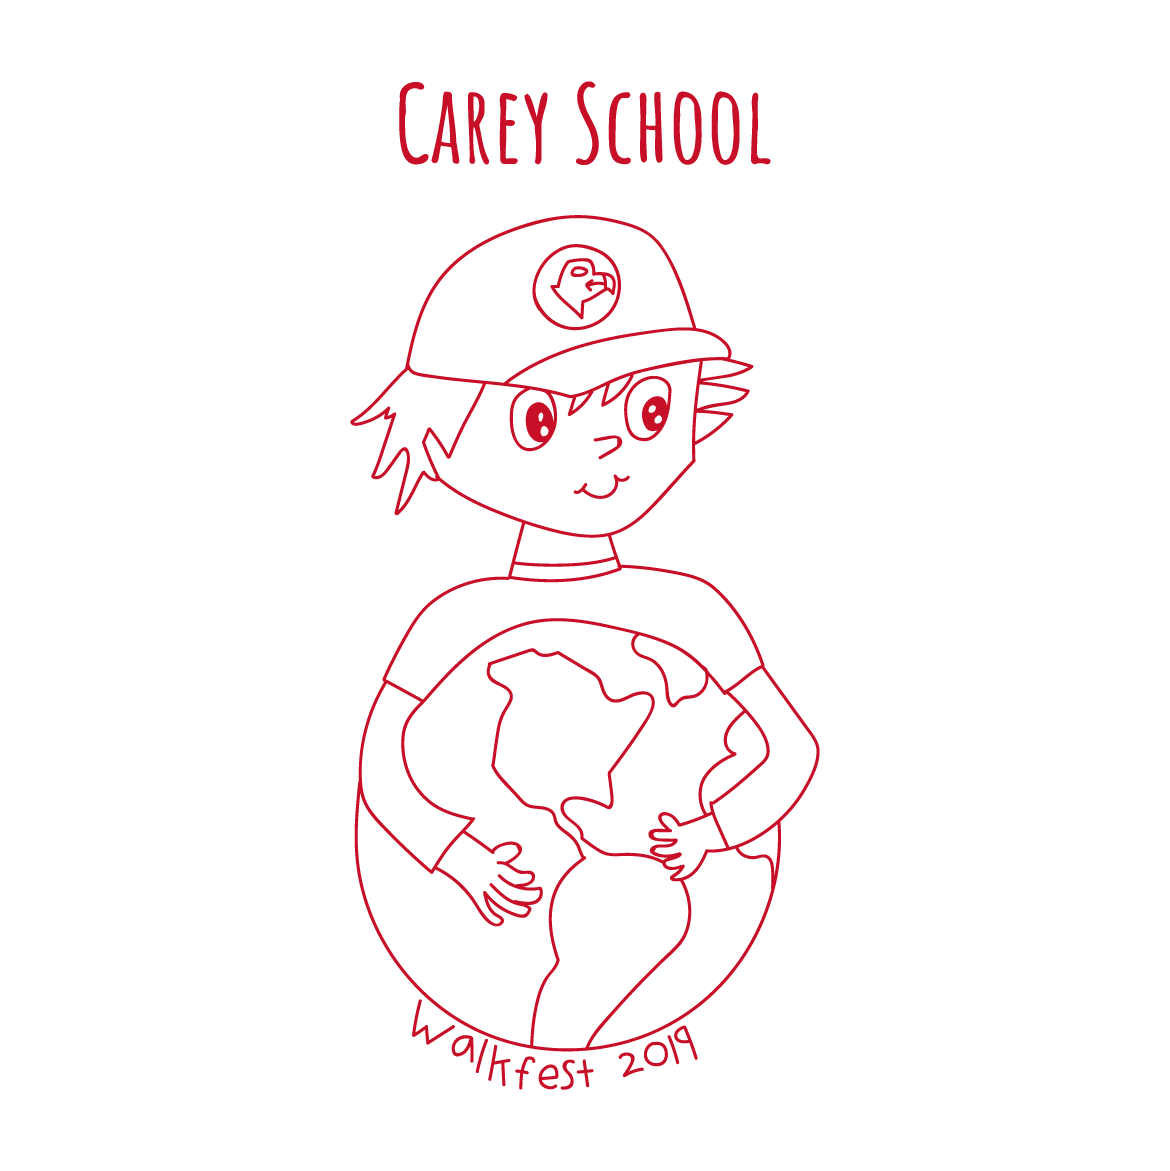 Carey School Walkfest 2019 shirt design - zoomed